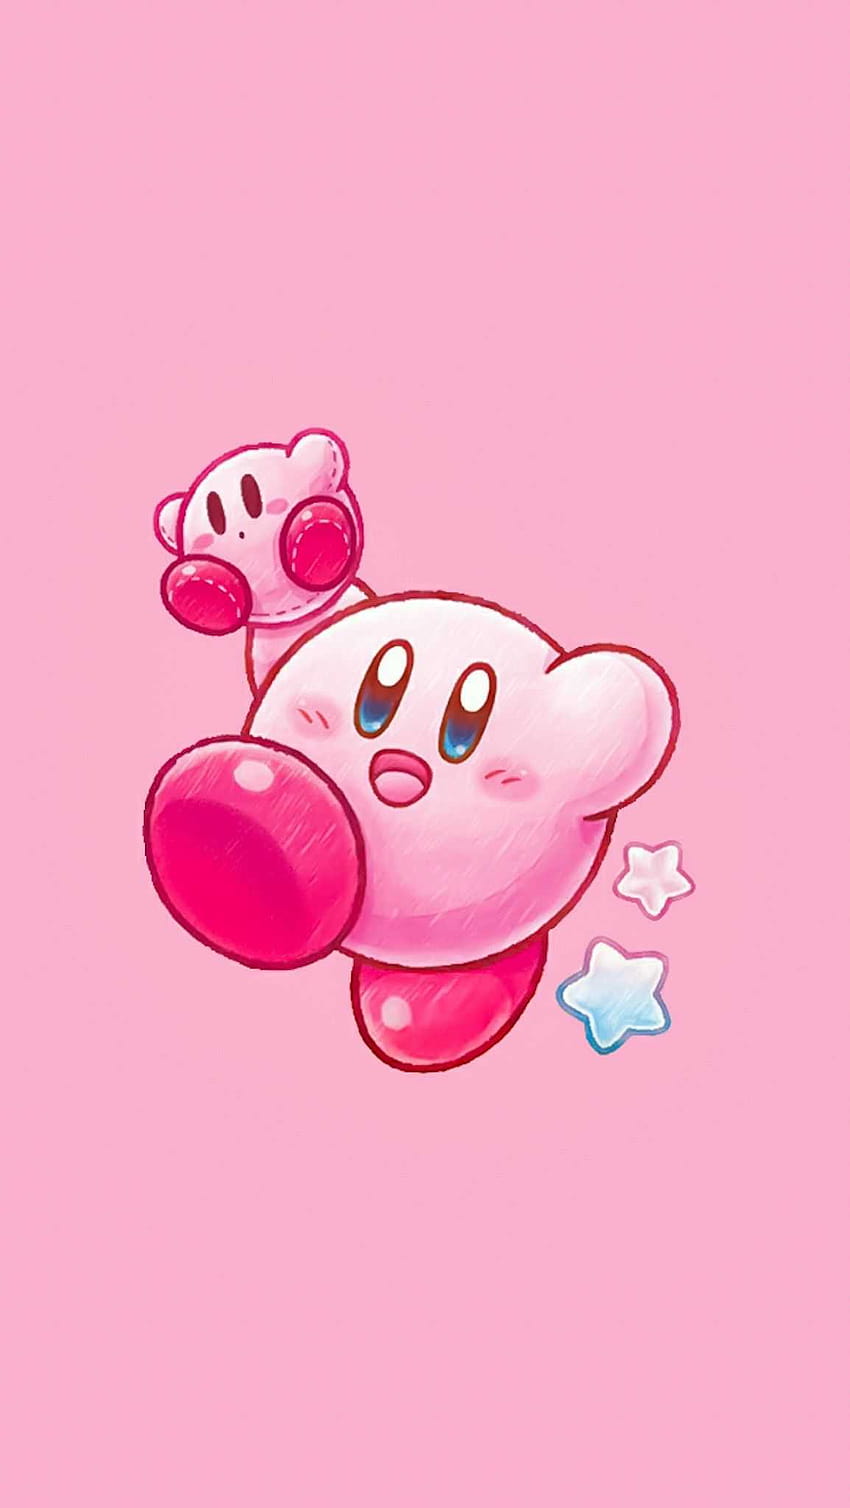 Màn hình điện thoại của bạn sẽ sống động hơn với hình nền Kirby chất lượng cao này. Với độ phân giải HD, màu sắc trung thực và sự đáng yêu của Kirby, bạn sẽ không thể rời mắt khỏi điện thoại của mình.